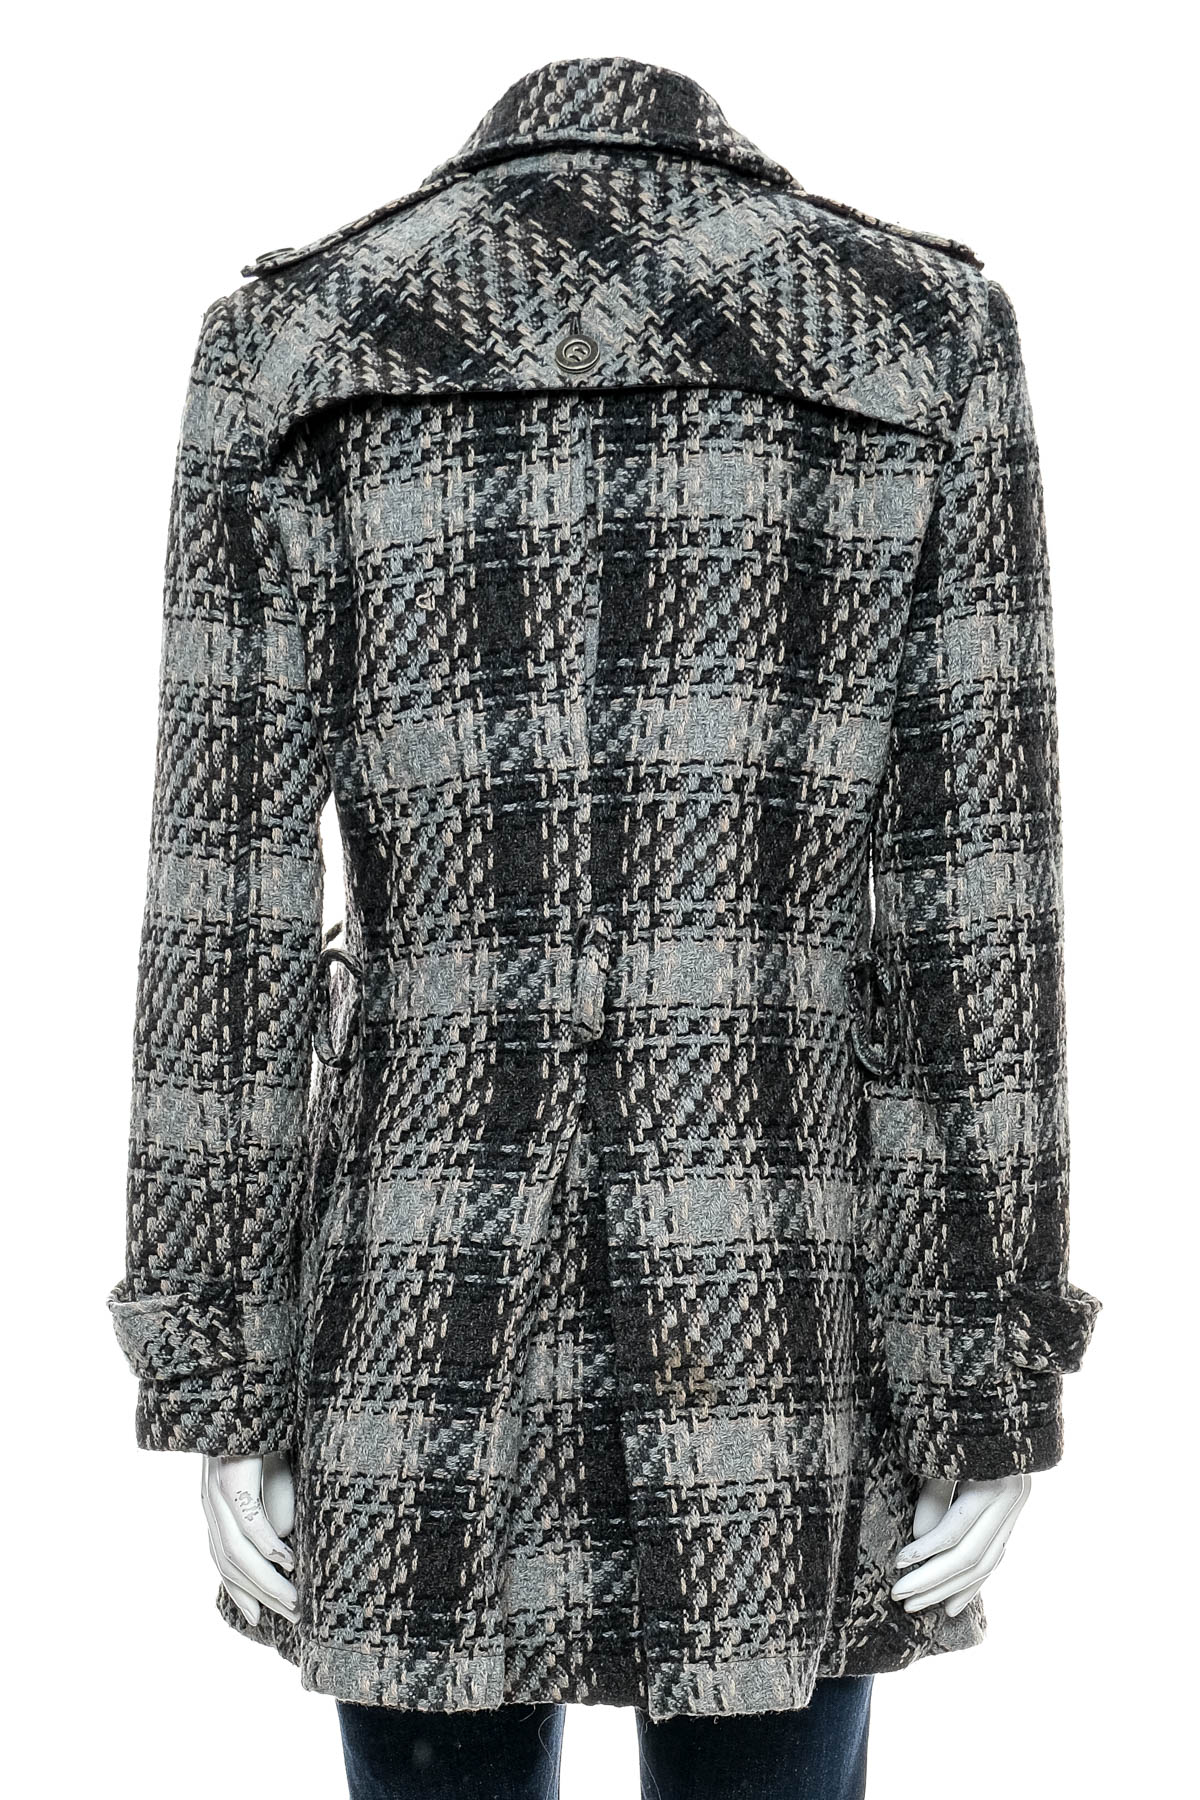 Women's coat - DKNY - 1